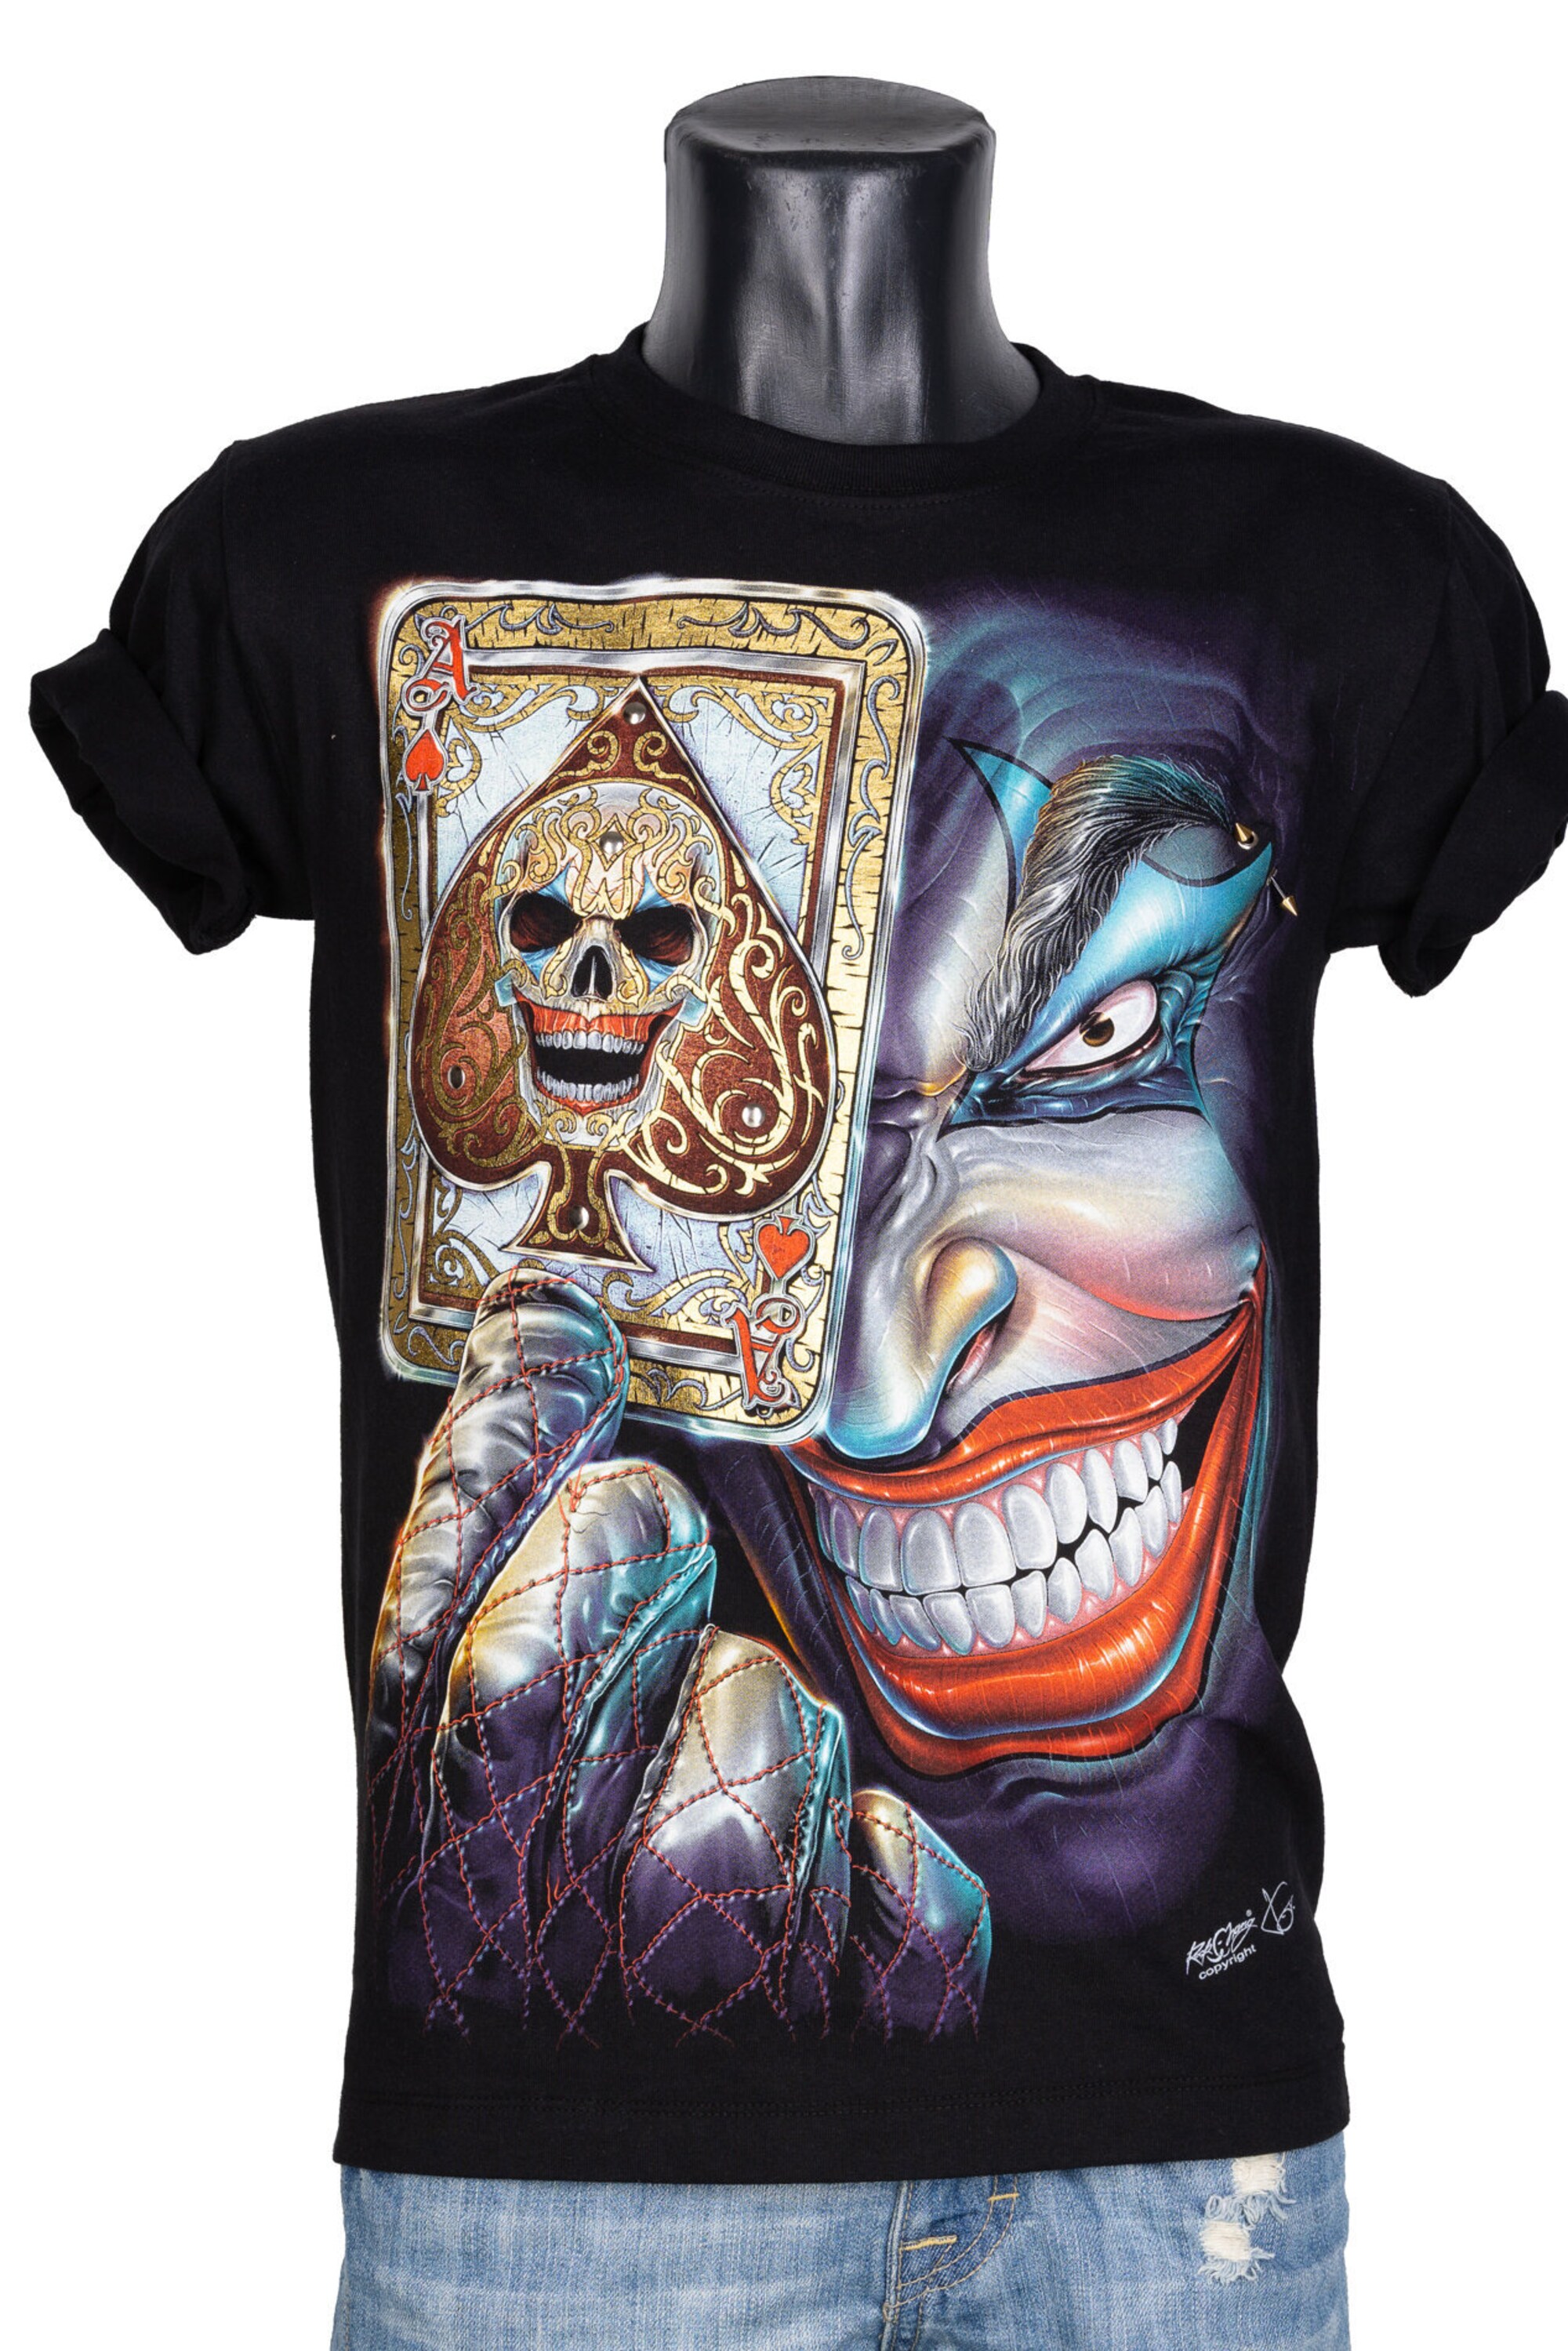 T-Shirt 3D Rock Chang Original Joker Clown with Pistols